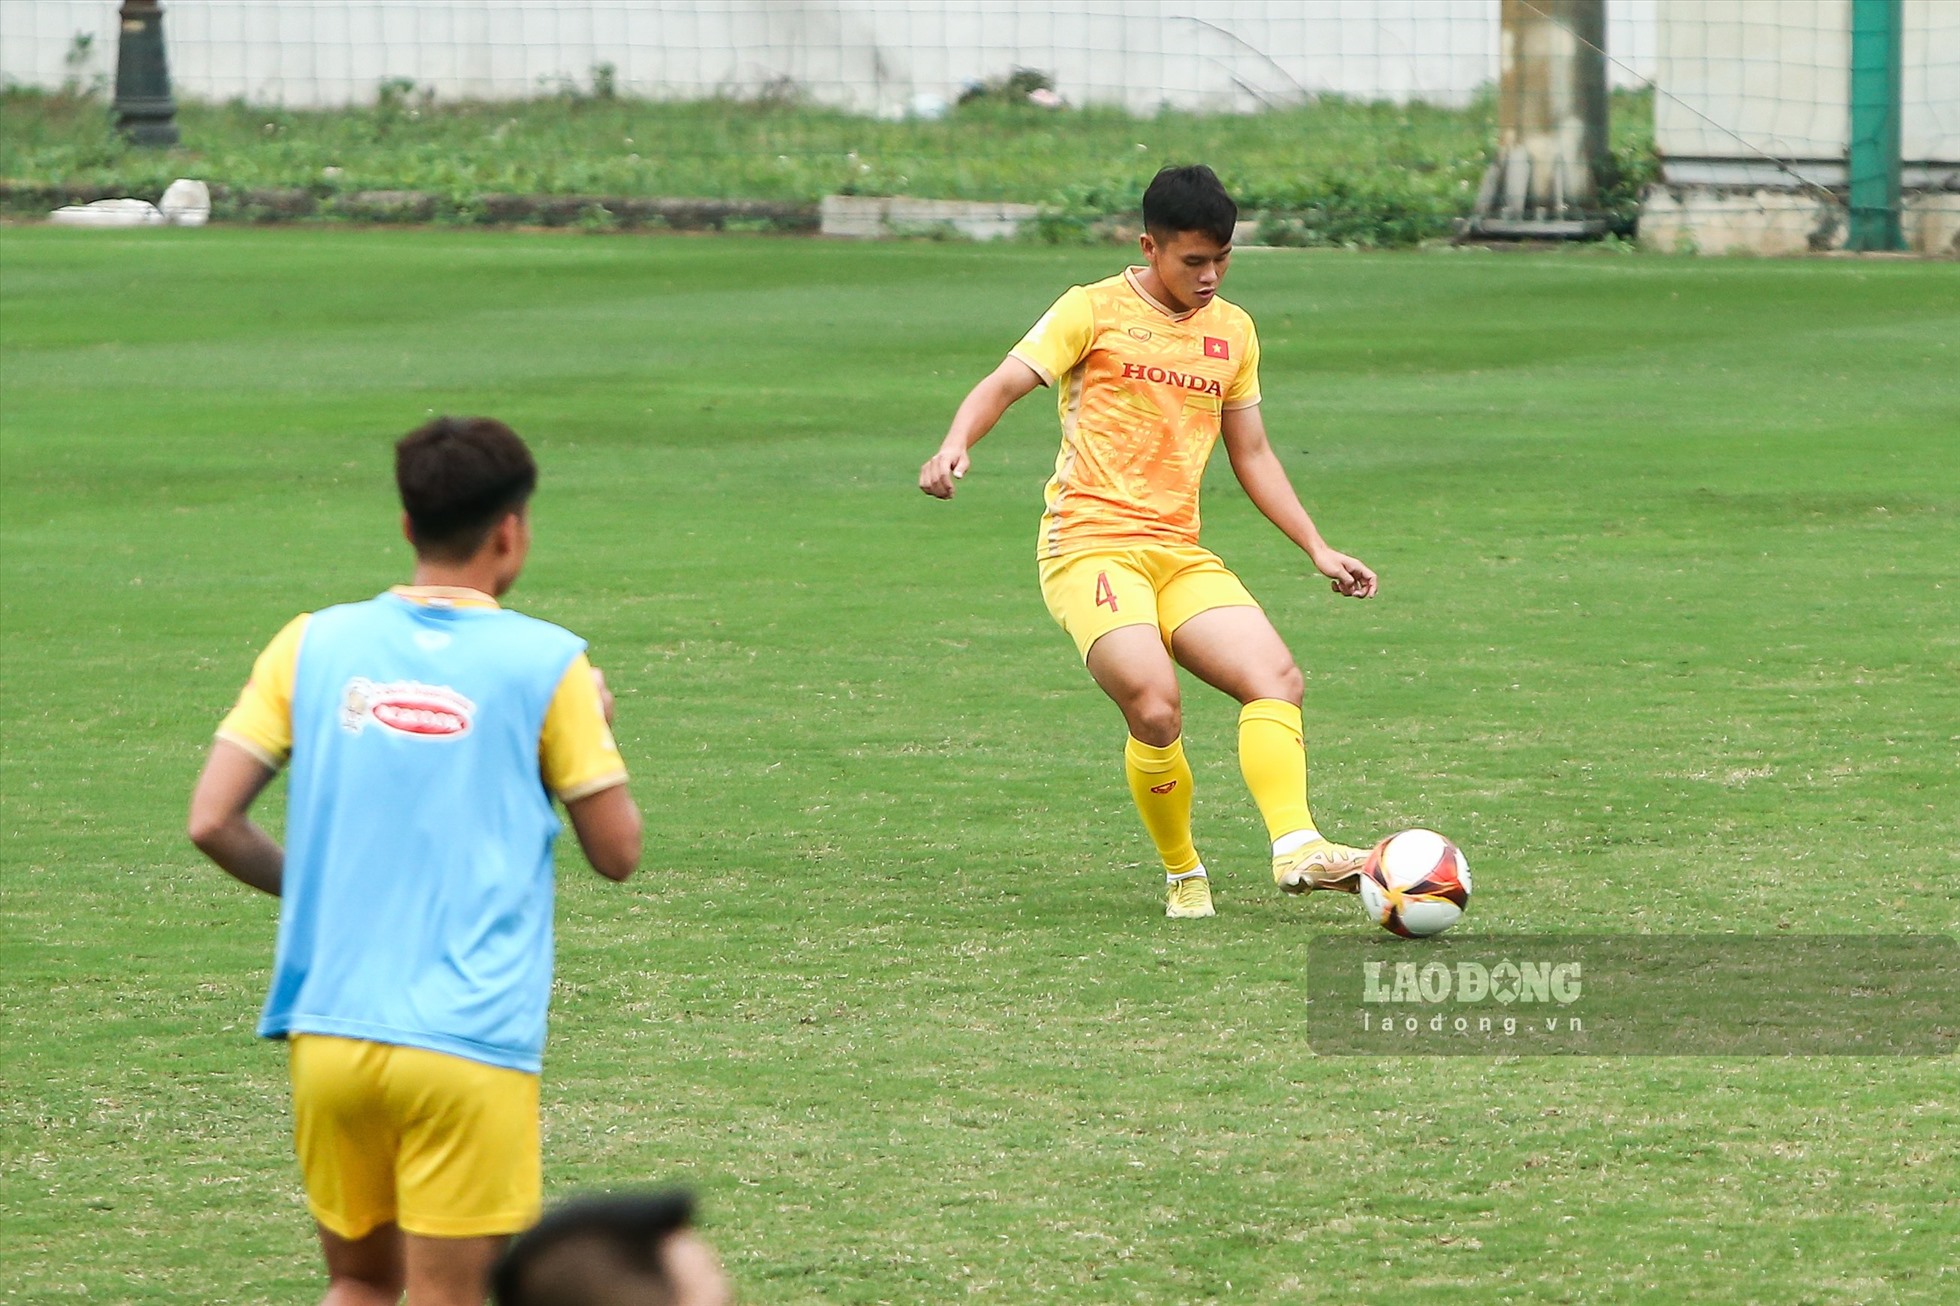 Sau 4 ngày, U23 Việt Nam đã cho thấy những dấu hiệu tiến bộ trong việc chuyền bóng,  kiểm soát bóng, tư thế nhận bóng. Đặc biệt, khả năng quan sát của các cầu thủ đã được cải thiện.